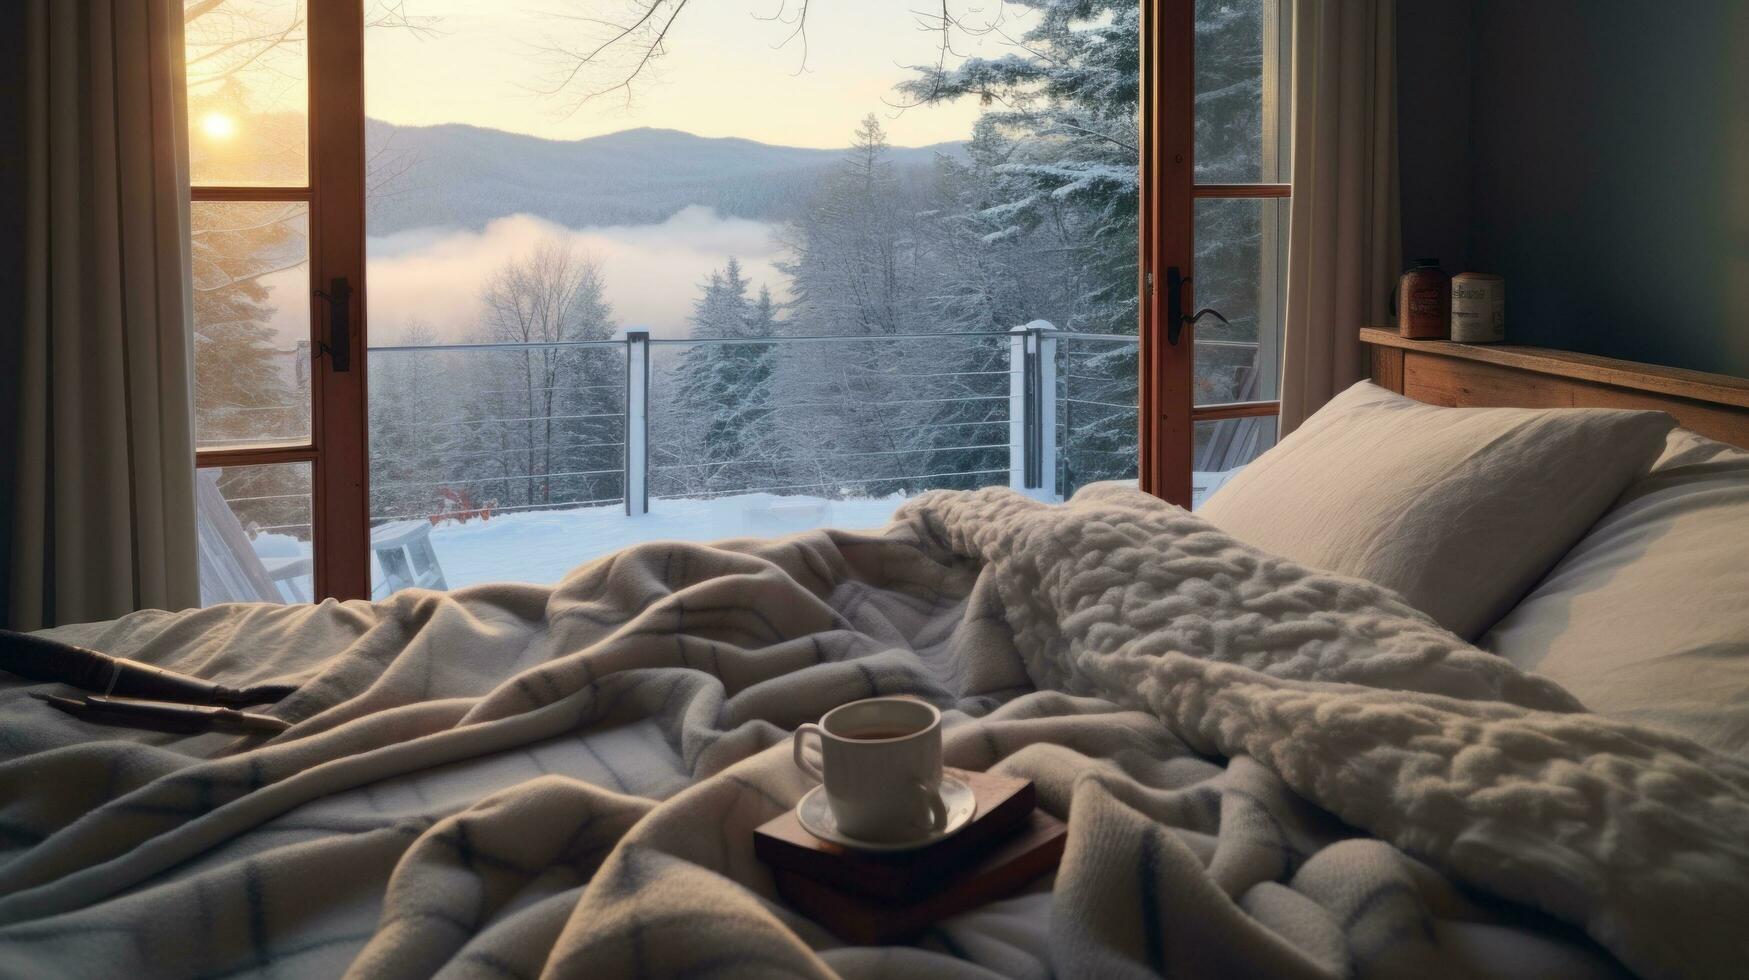 ai gerado inverno final de semana manhã, acolhedor cama, quente cacau, e uma beijado pelo gelo janela panorama foto